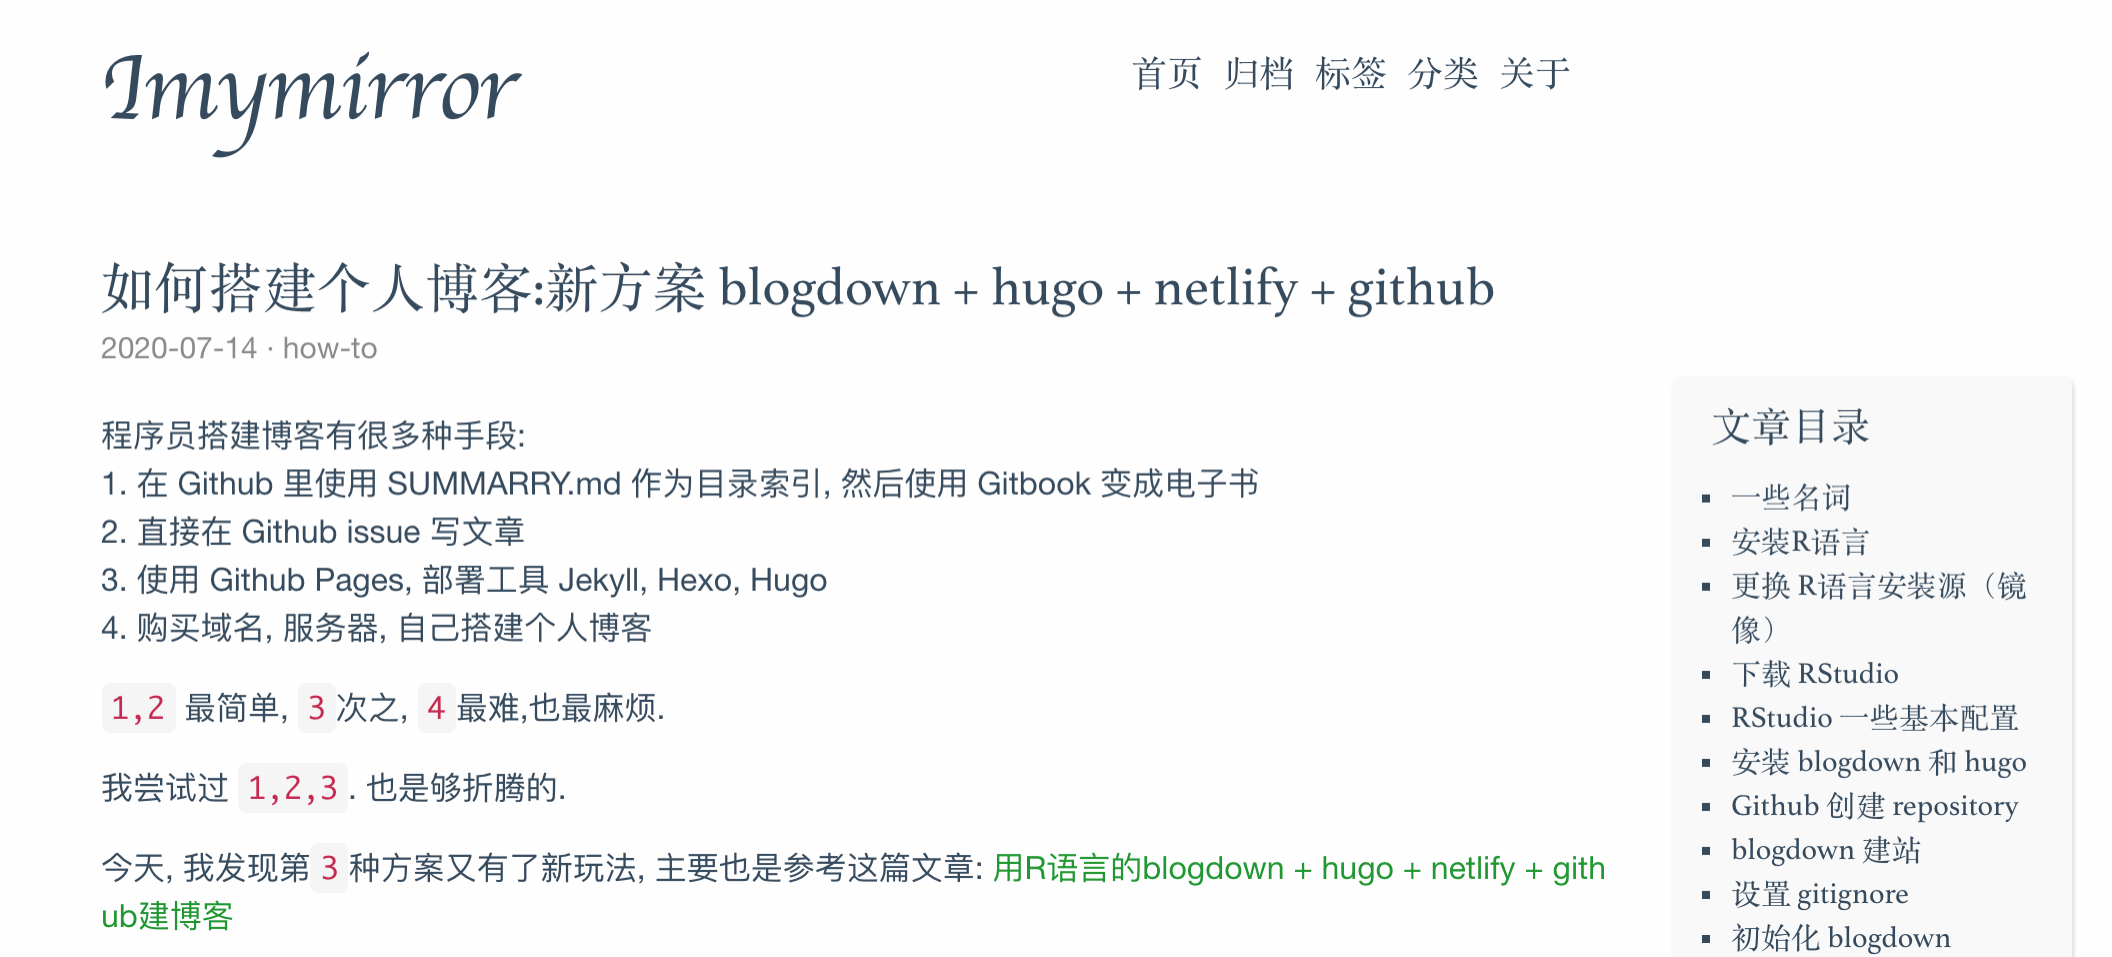 如何搭建个人博客:新方案 blogdown + hugo + netlify + github